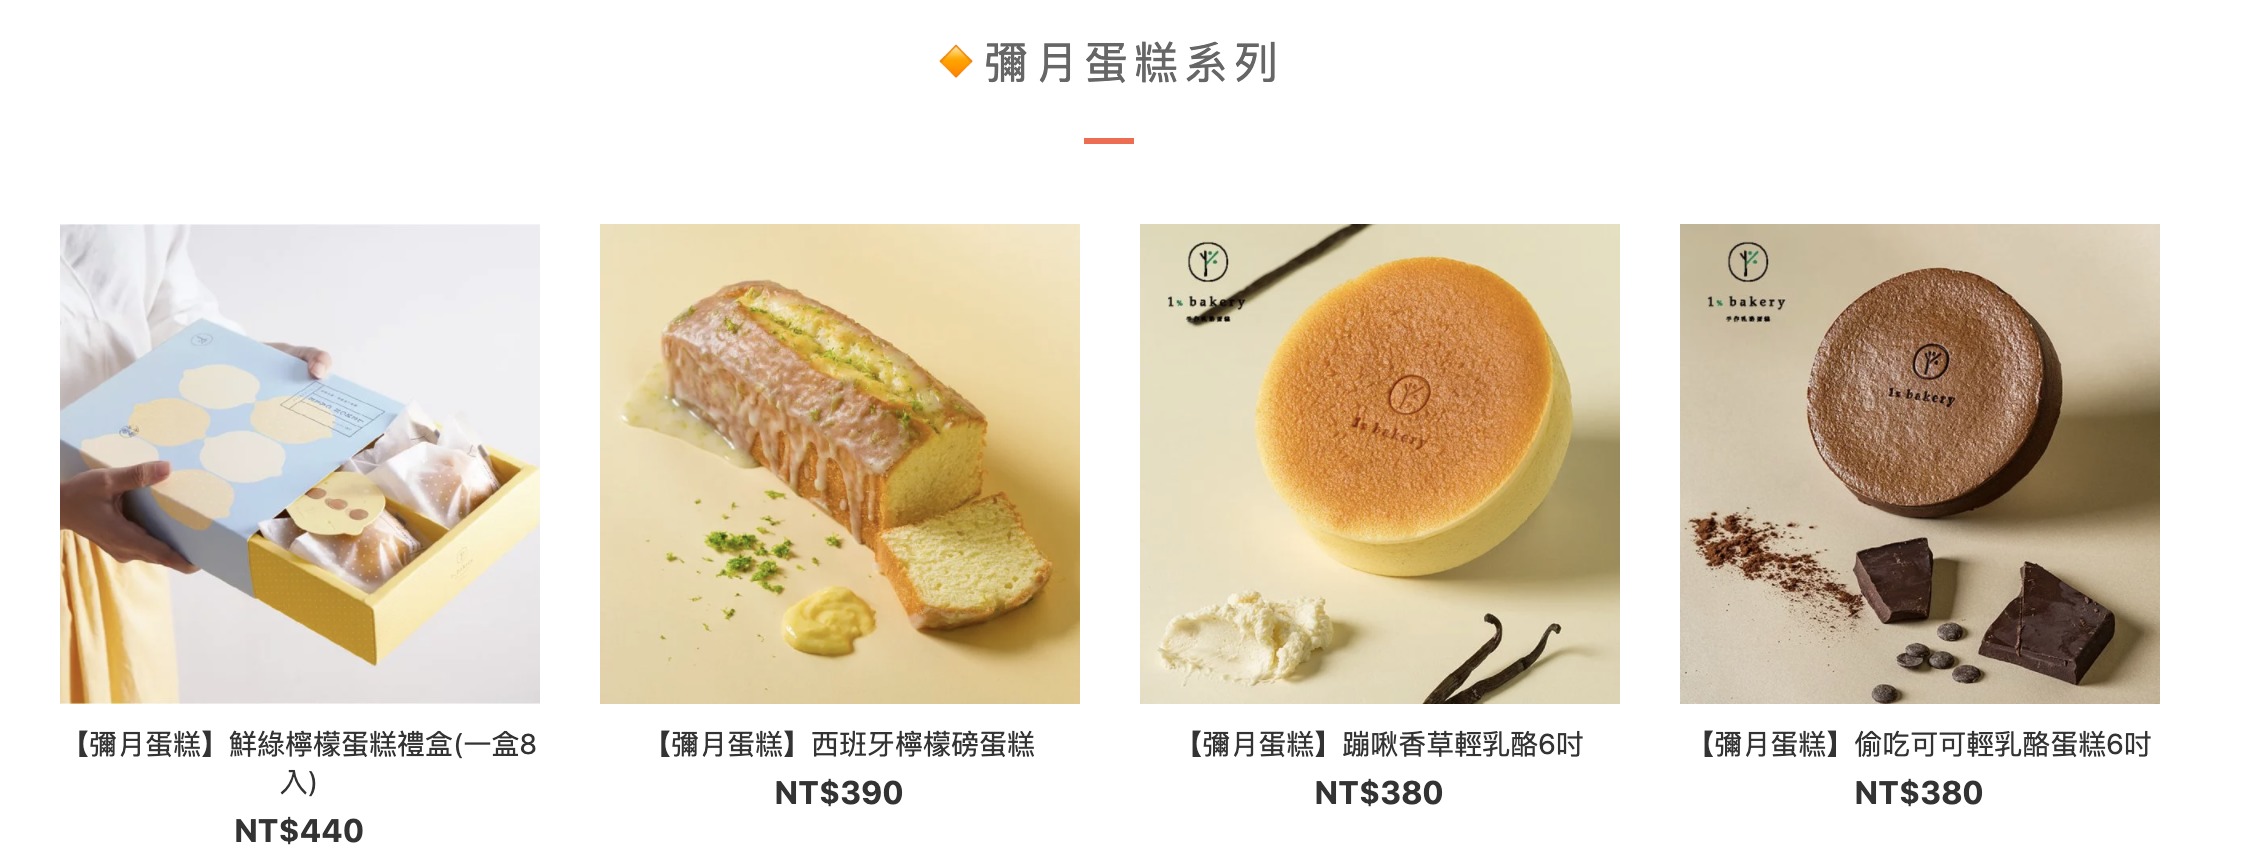 台湾_お取り寄せスイーツ_1%bakery